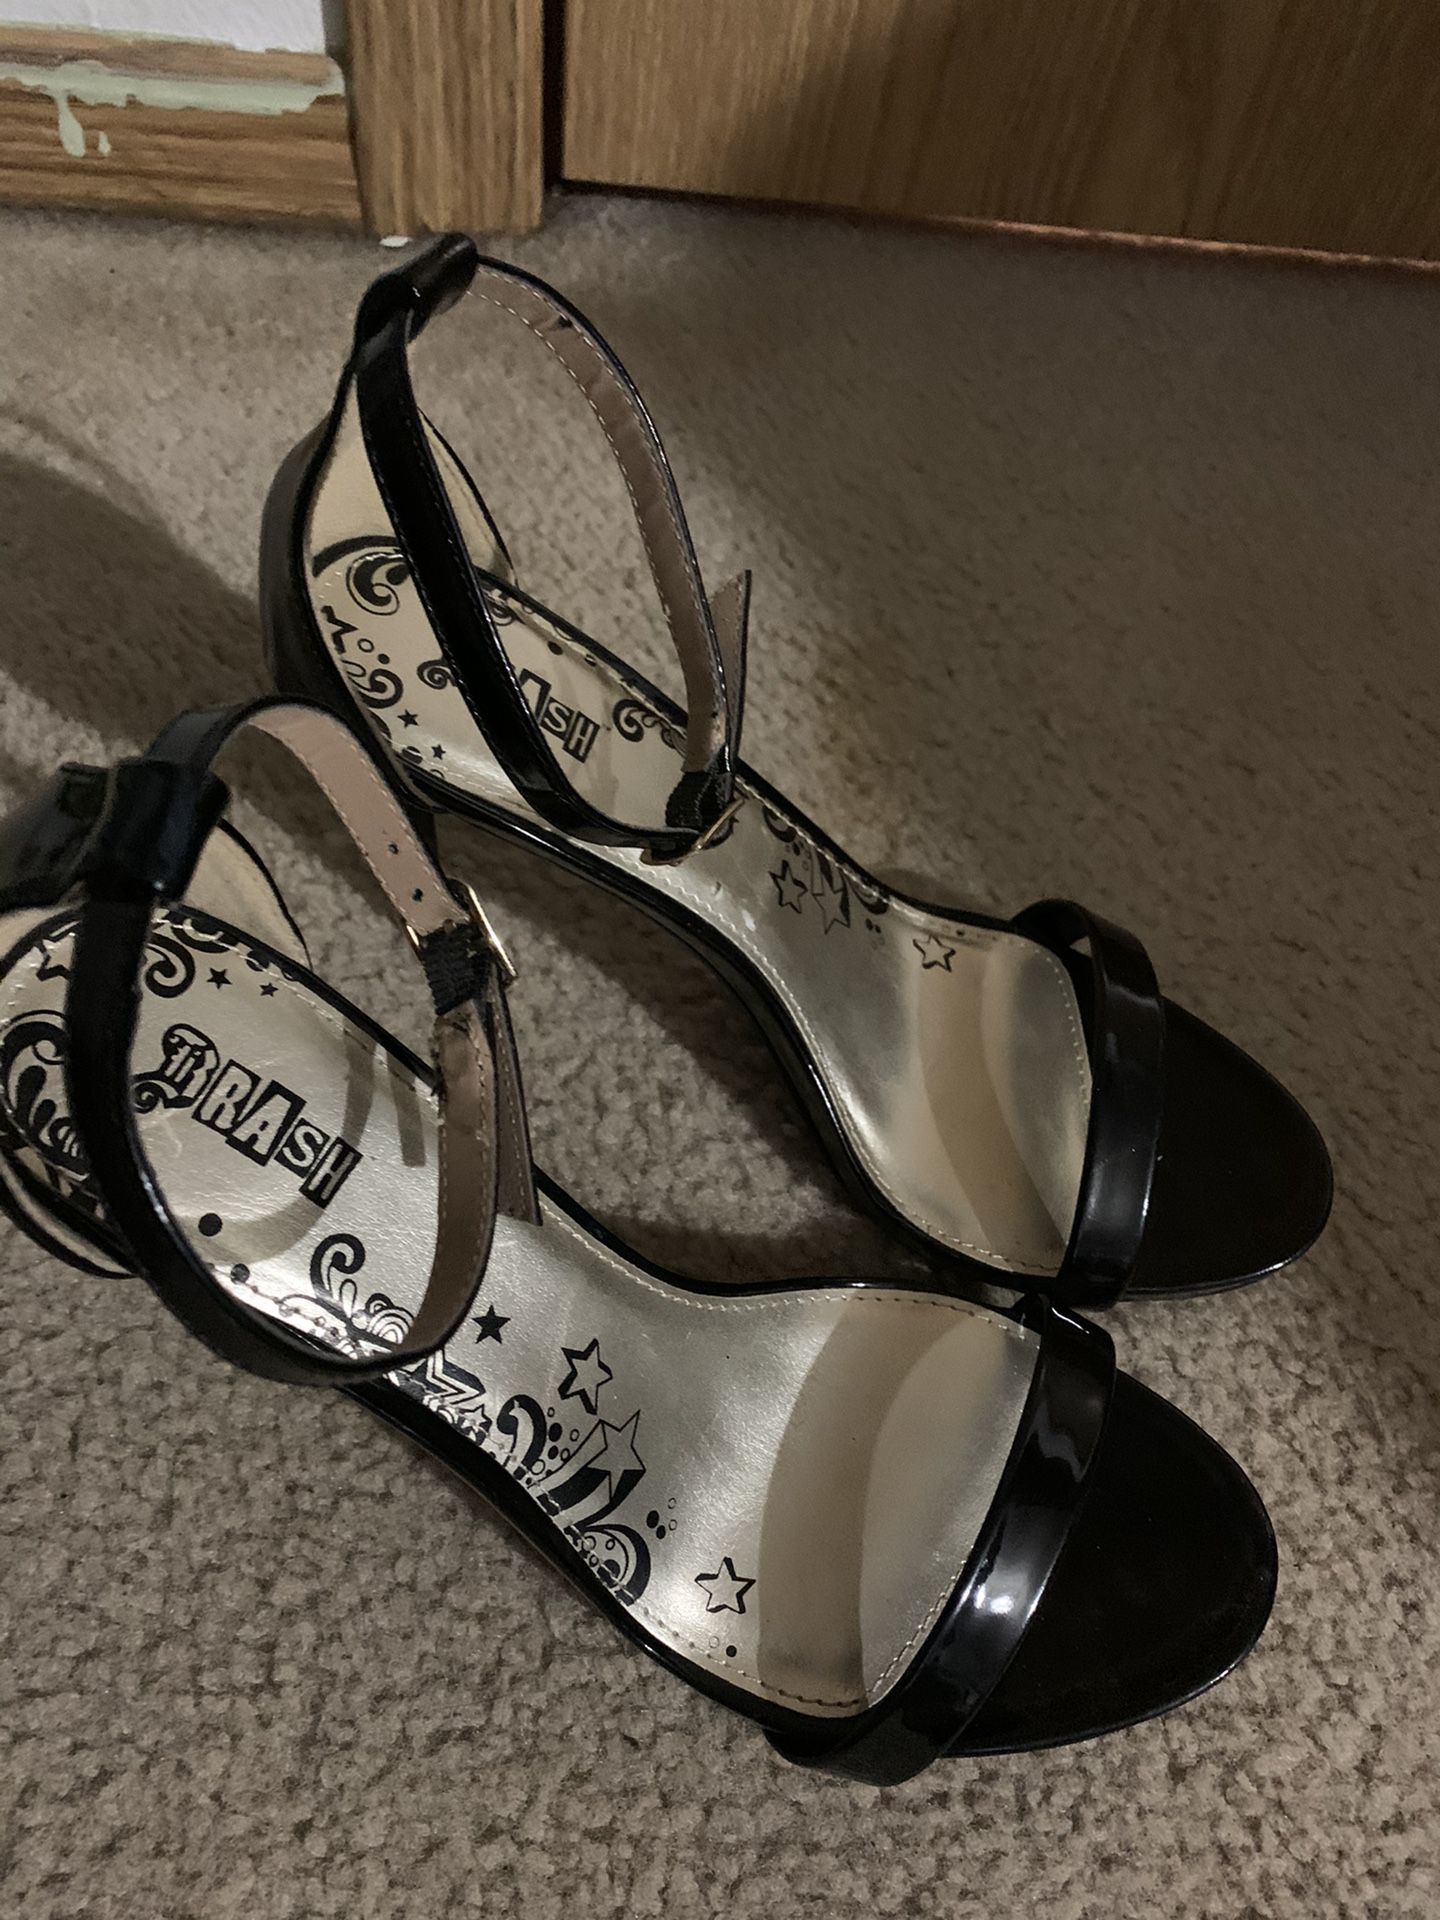 Black heels women’s size 9w